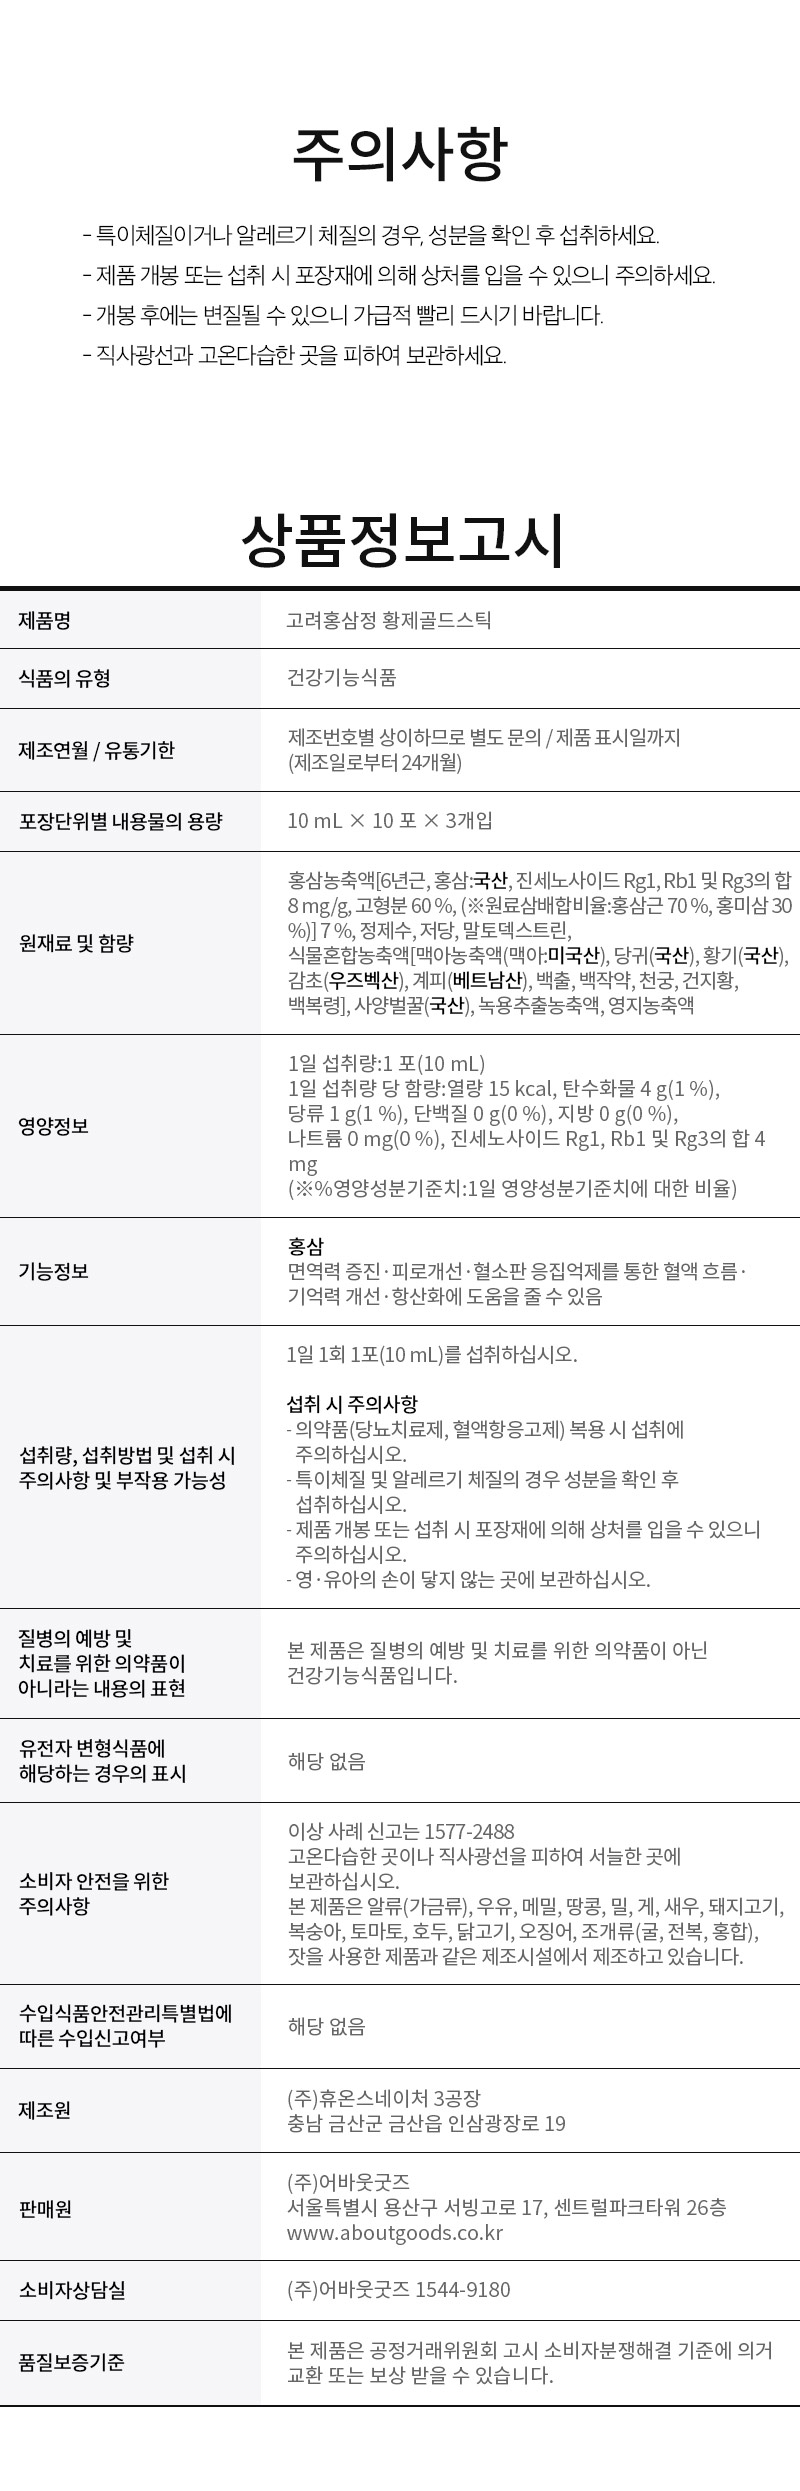 hansamgeun_hongsamjeong_goldstick_info.jpg